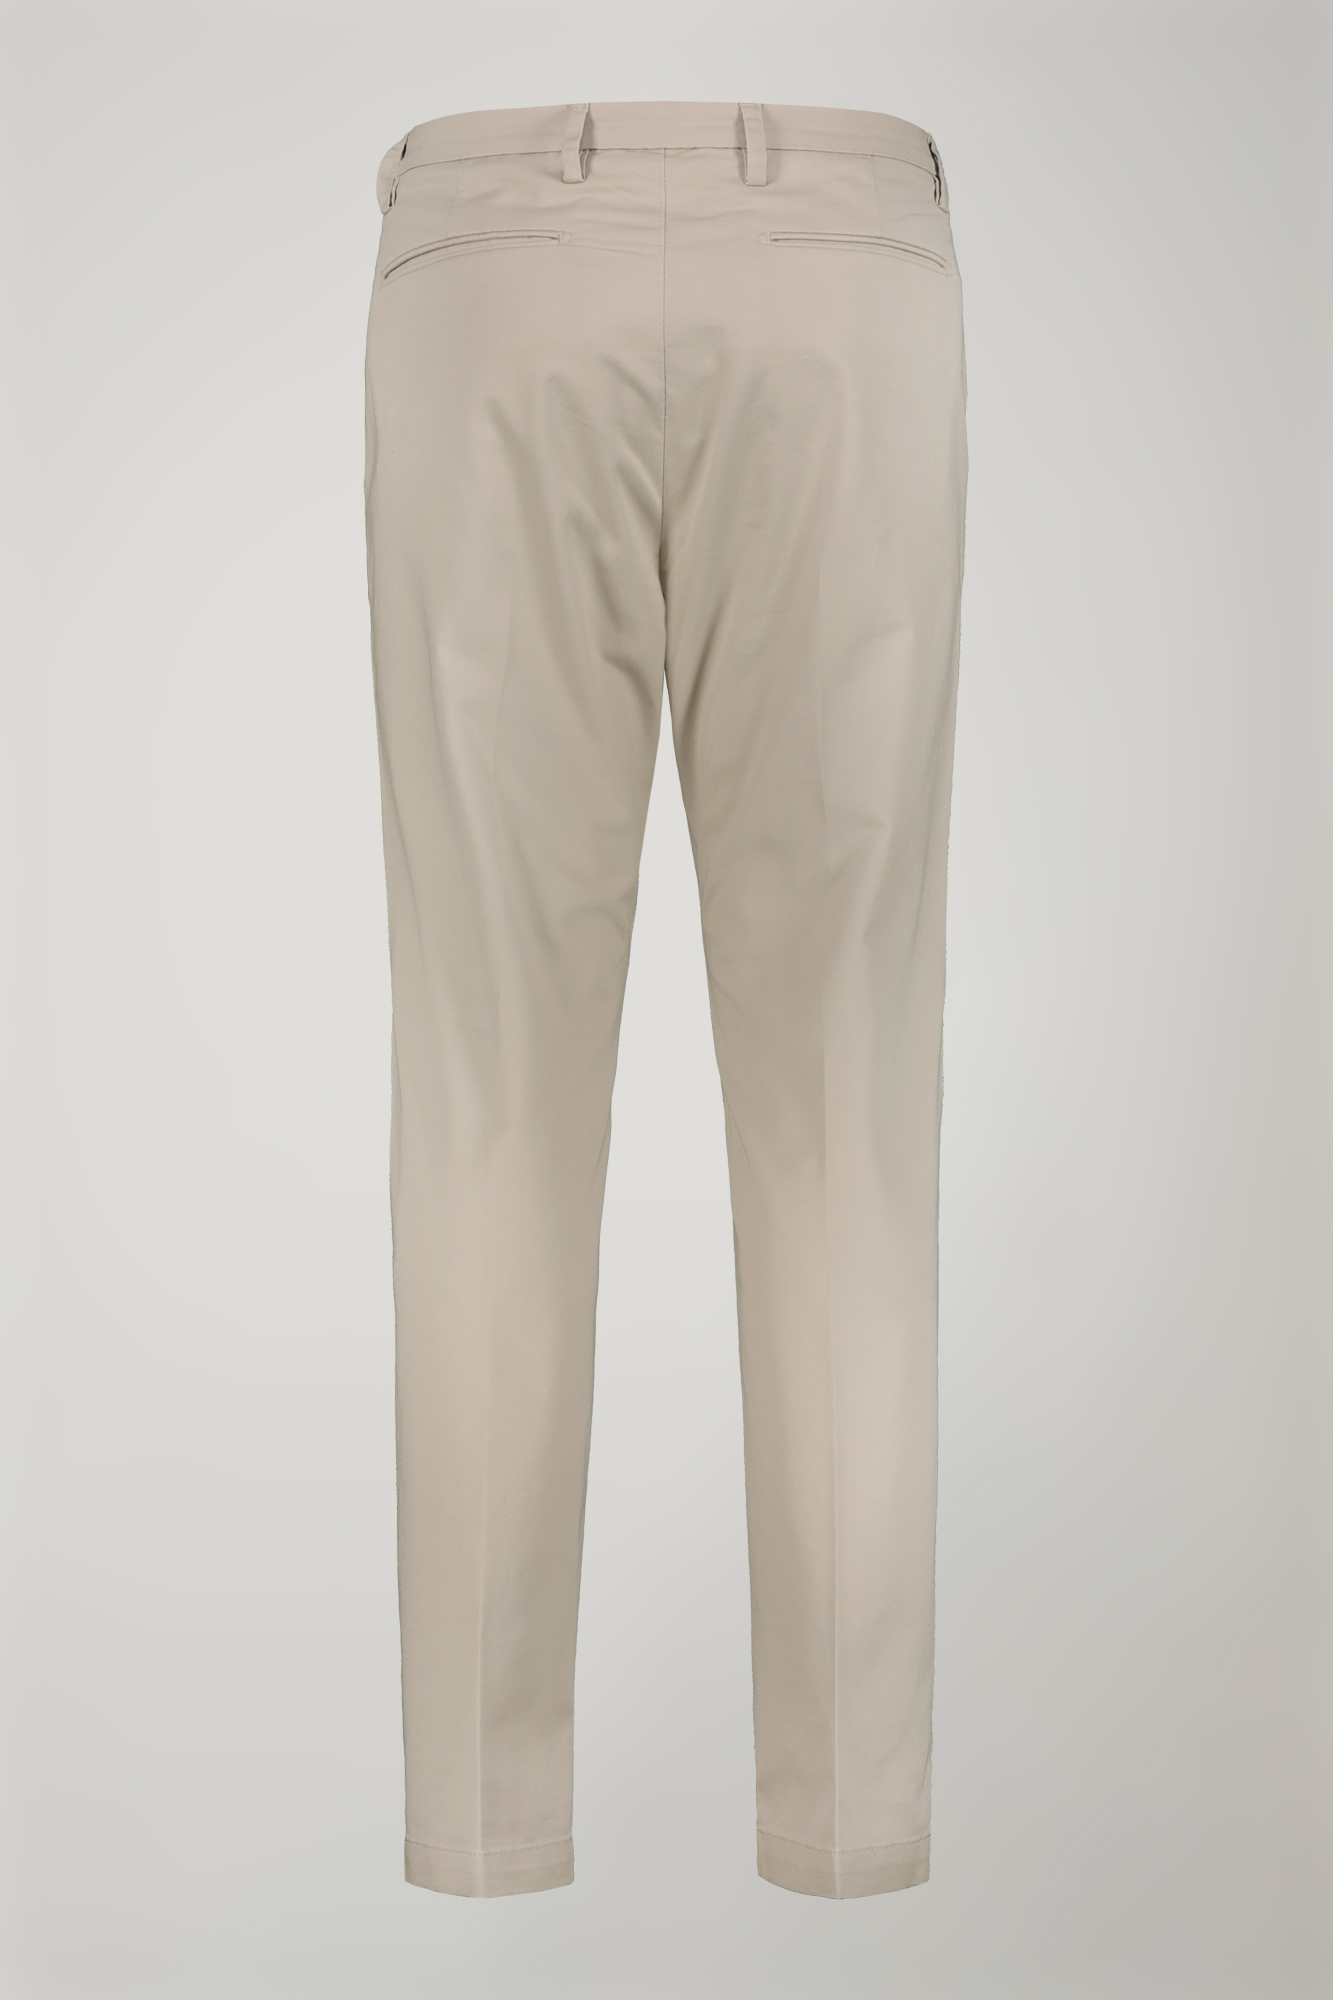 Pantalone chino uomo classico costruzione twill elasticizzato perfect fit image number null